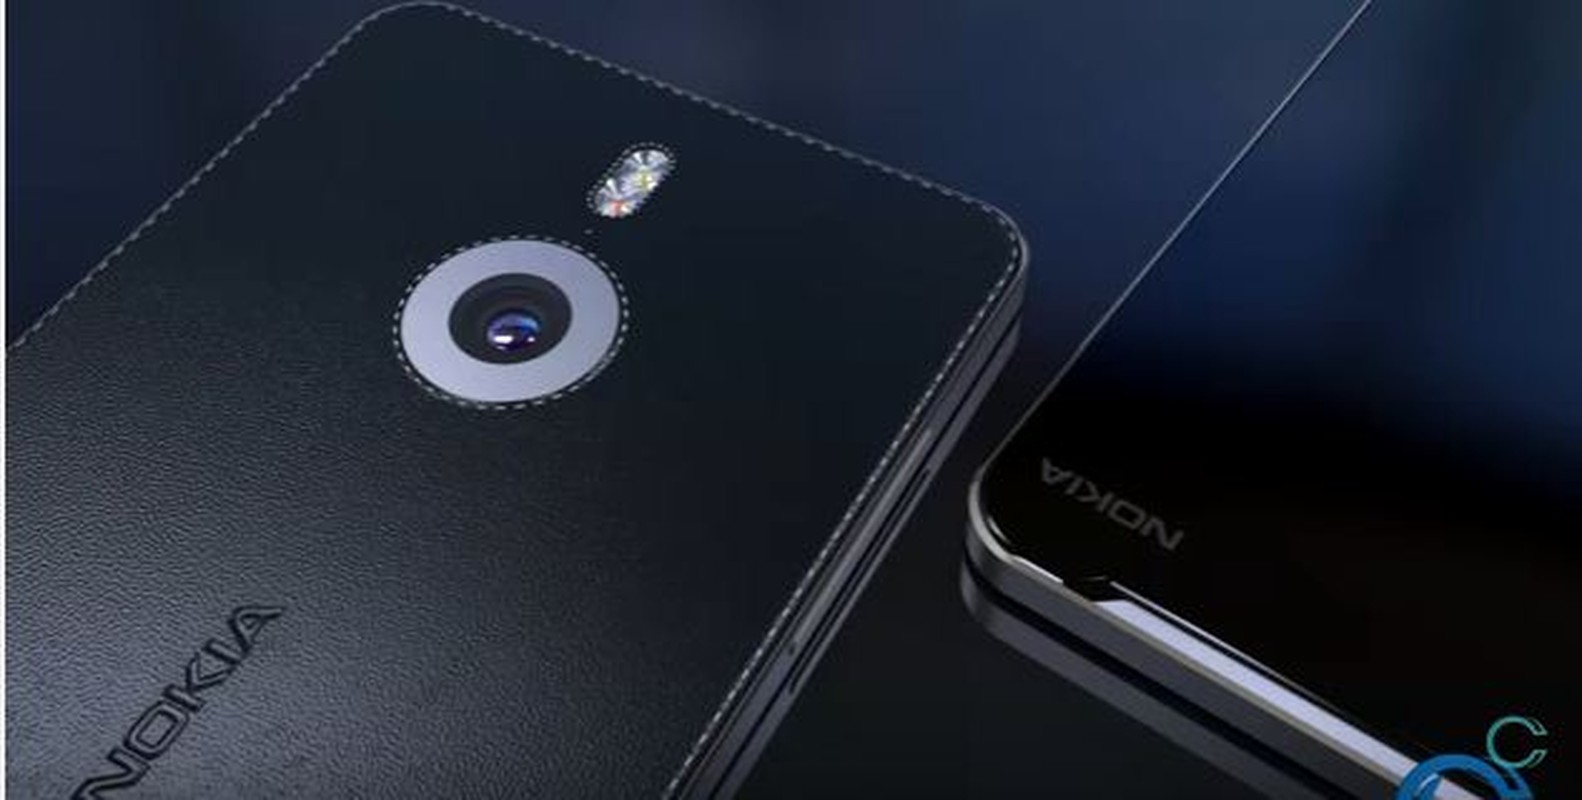 Ngam concept sieu pham Nokia C9 vo da sang trong-Hinh-3